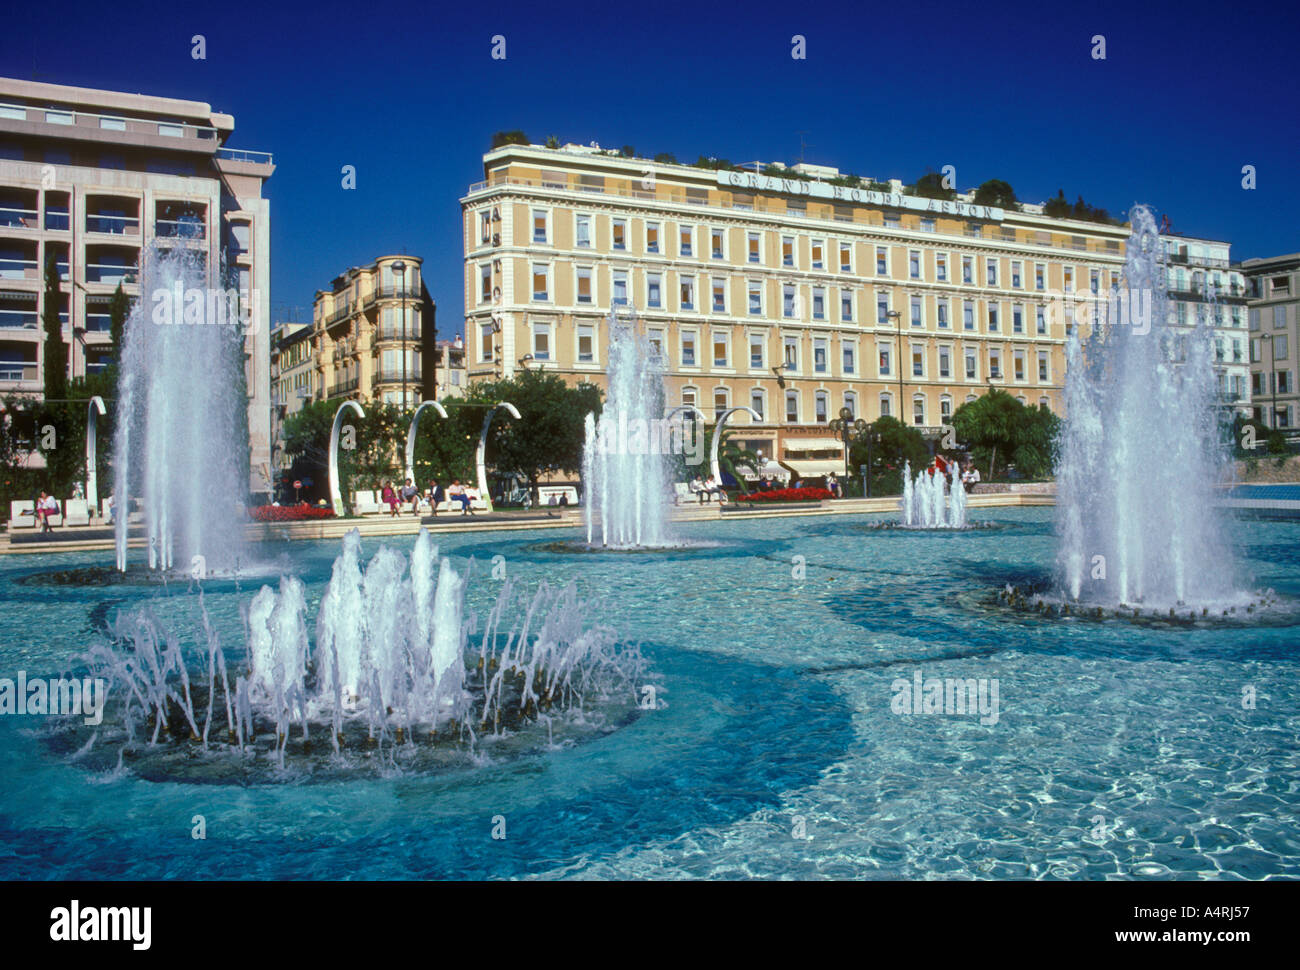 Fontaine, place Masséna, Grand Hôtel Aston, en arrière-plan, , ville de Nice, Nice, French Riviera, Cote d'Azur, France, Europe Banque D'Images